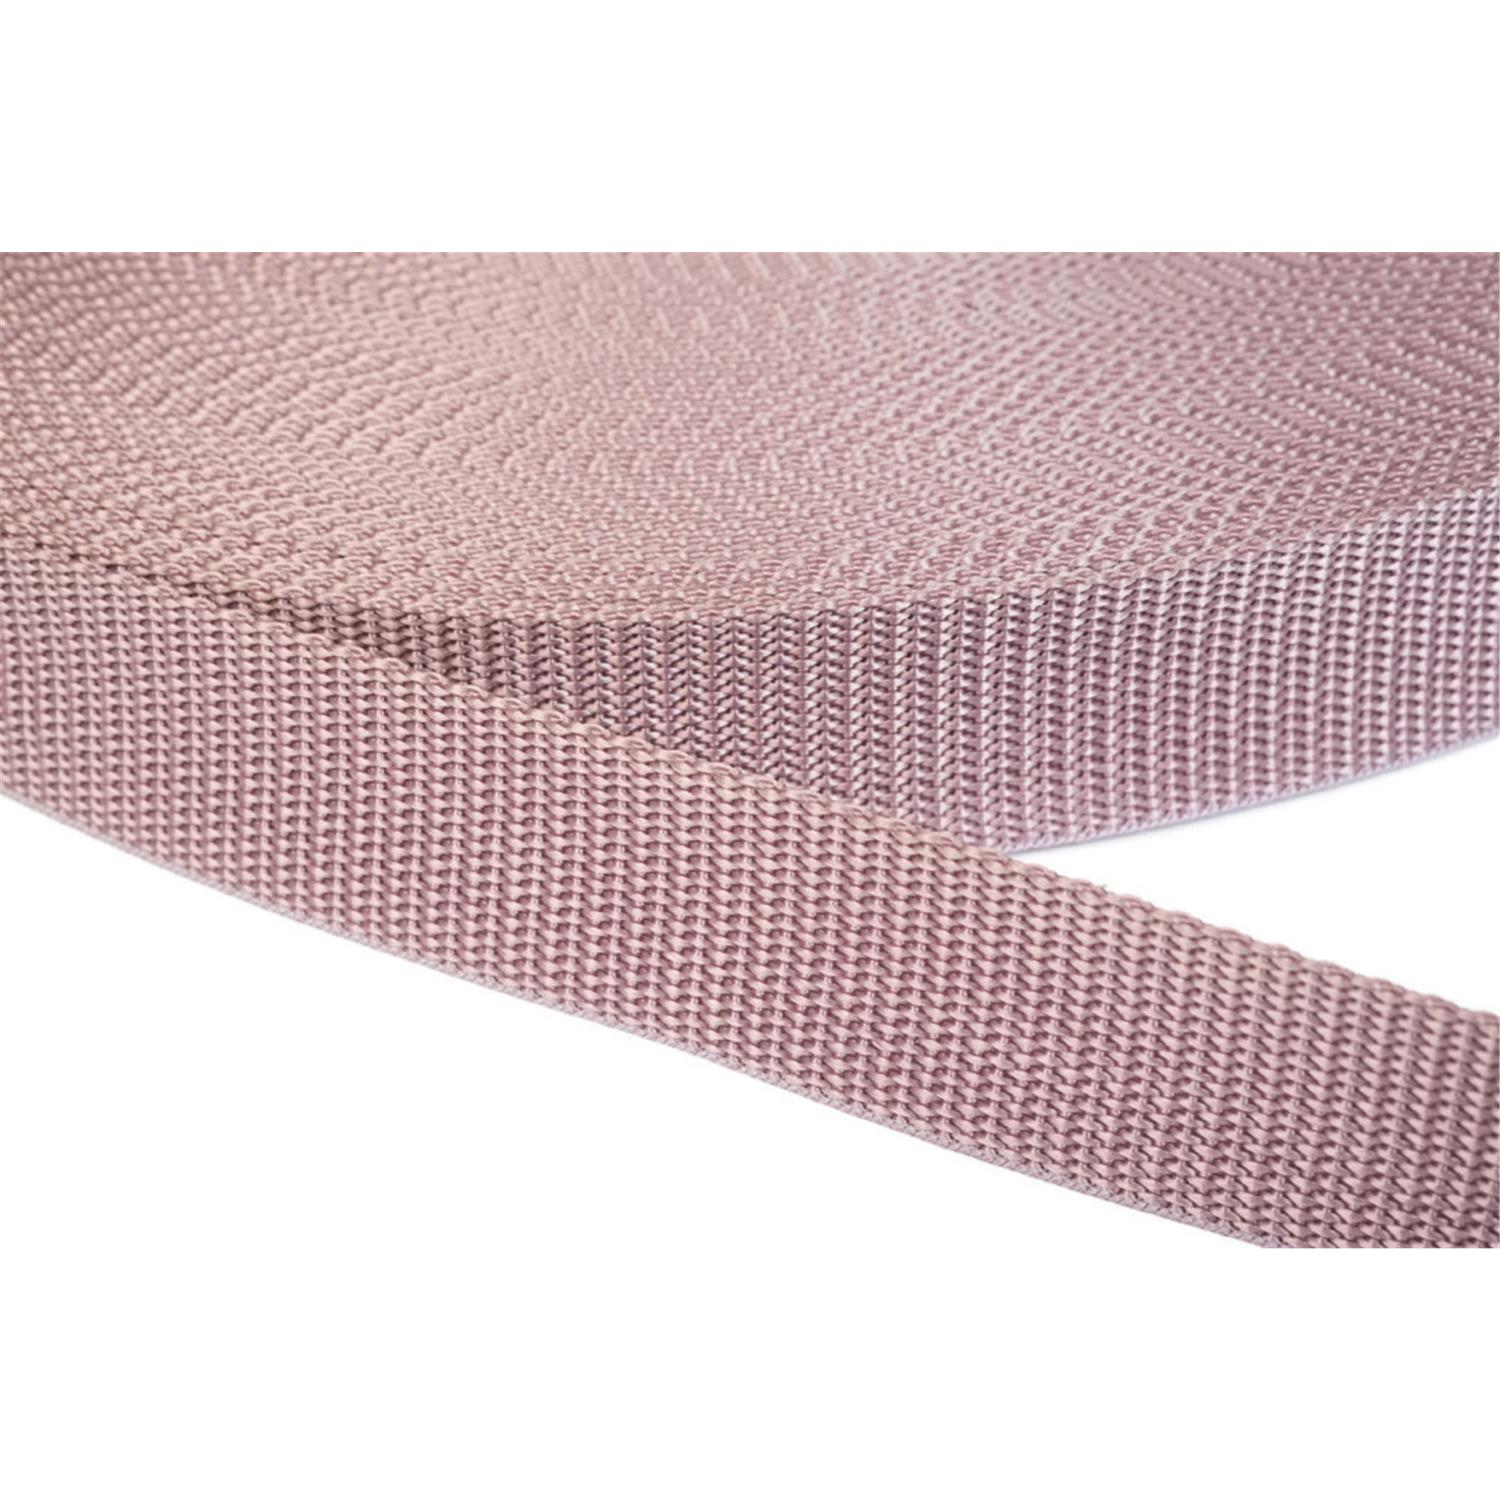 Gurtband 30mm breit aus Polypropylen in 41 Farben 15 - altrosa 12 Meter